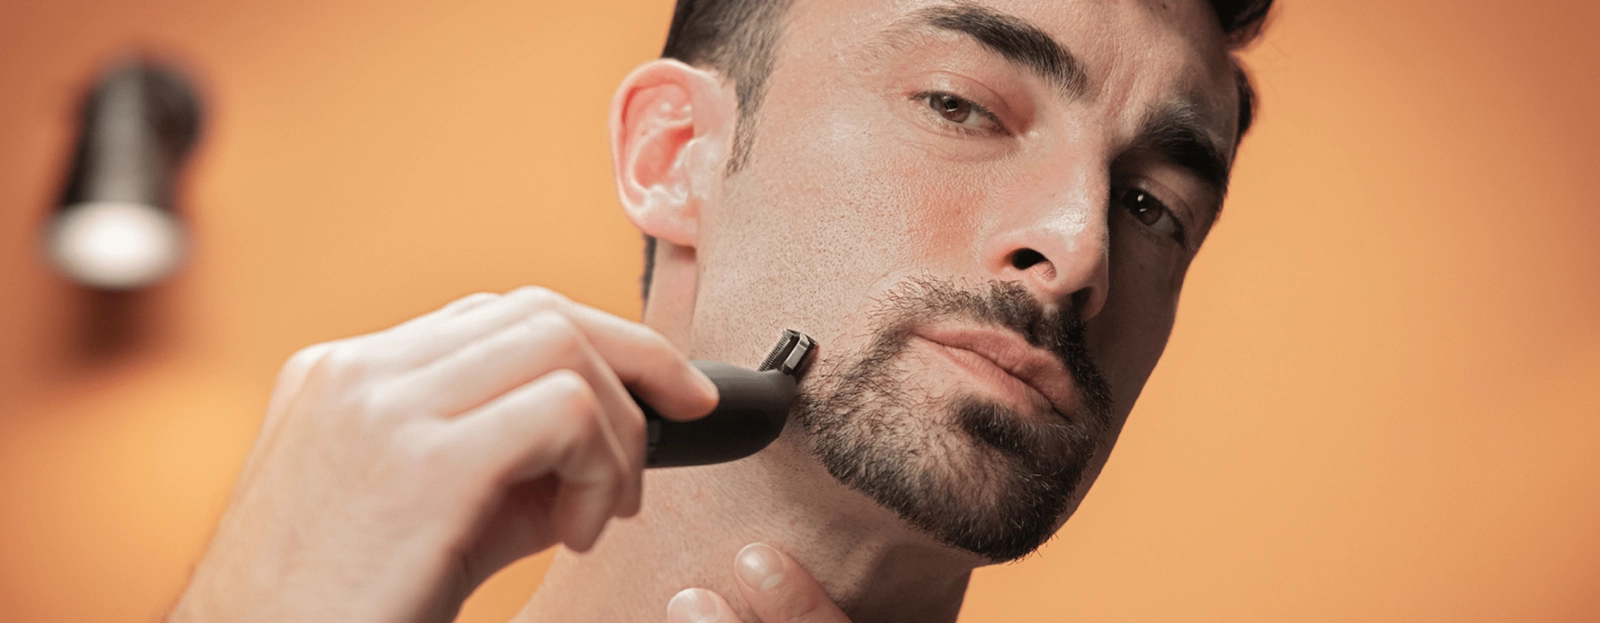 Cómo hacer un mechón de barba - Gillette Latam